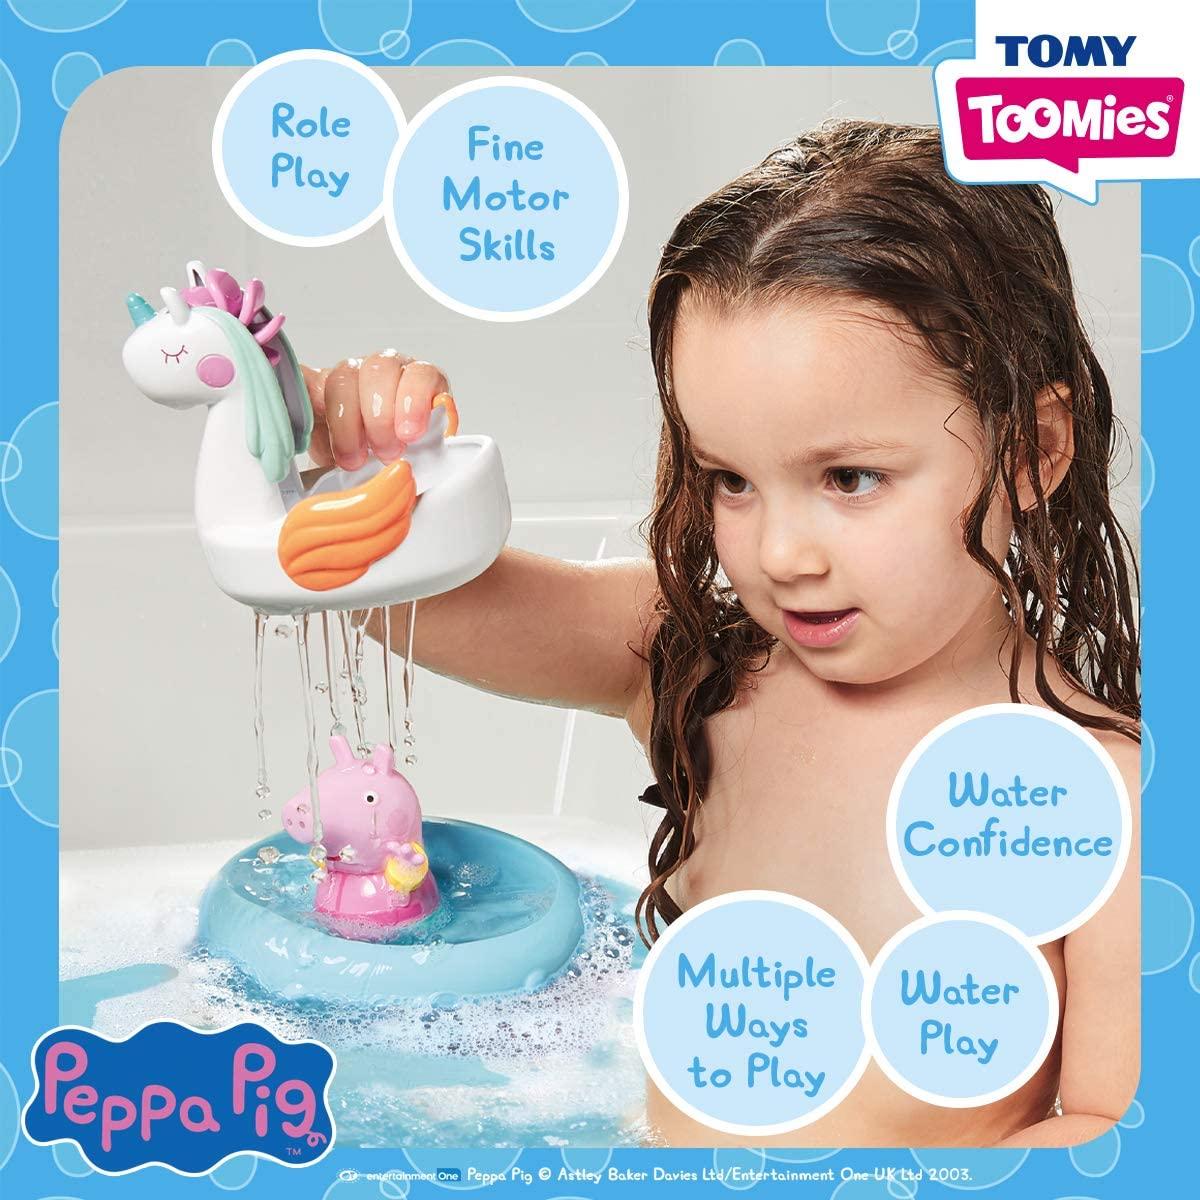 Tomy Peppa & Unicorn (Peppa Pig) Bath Float Bath Toy